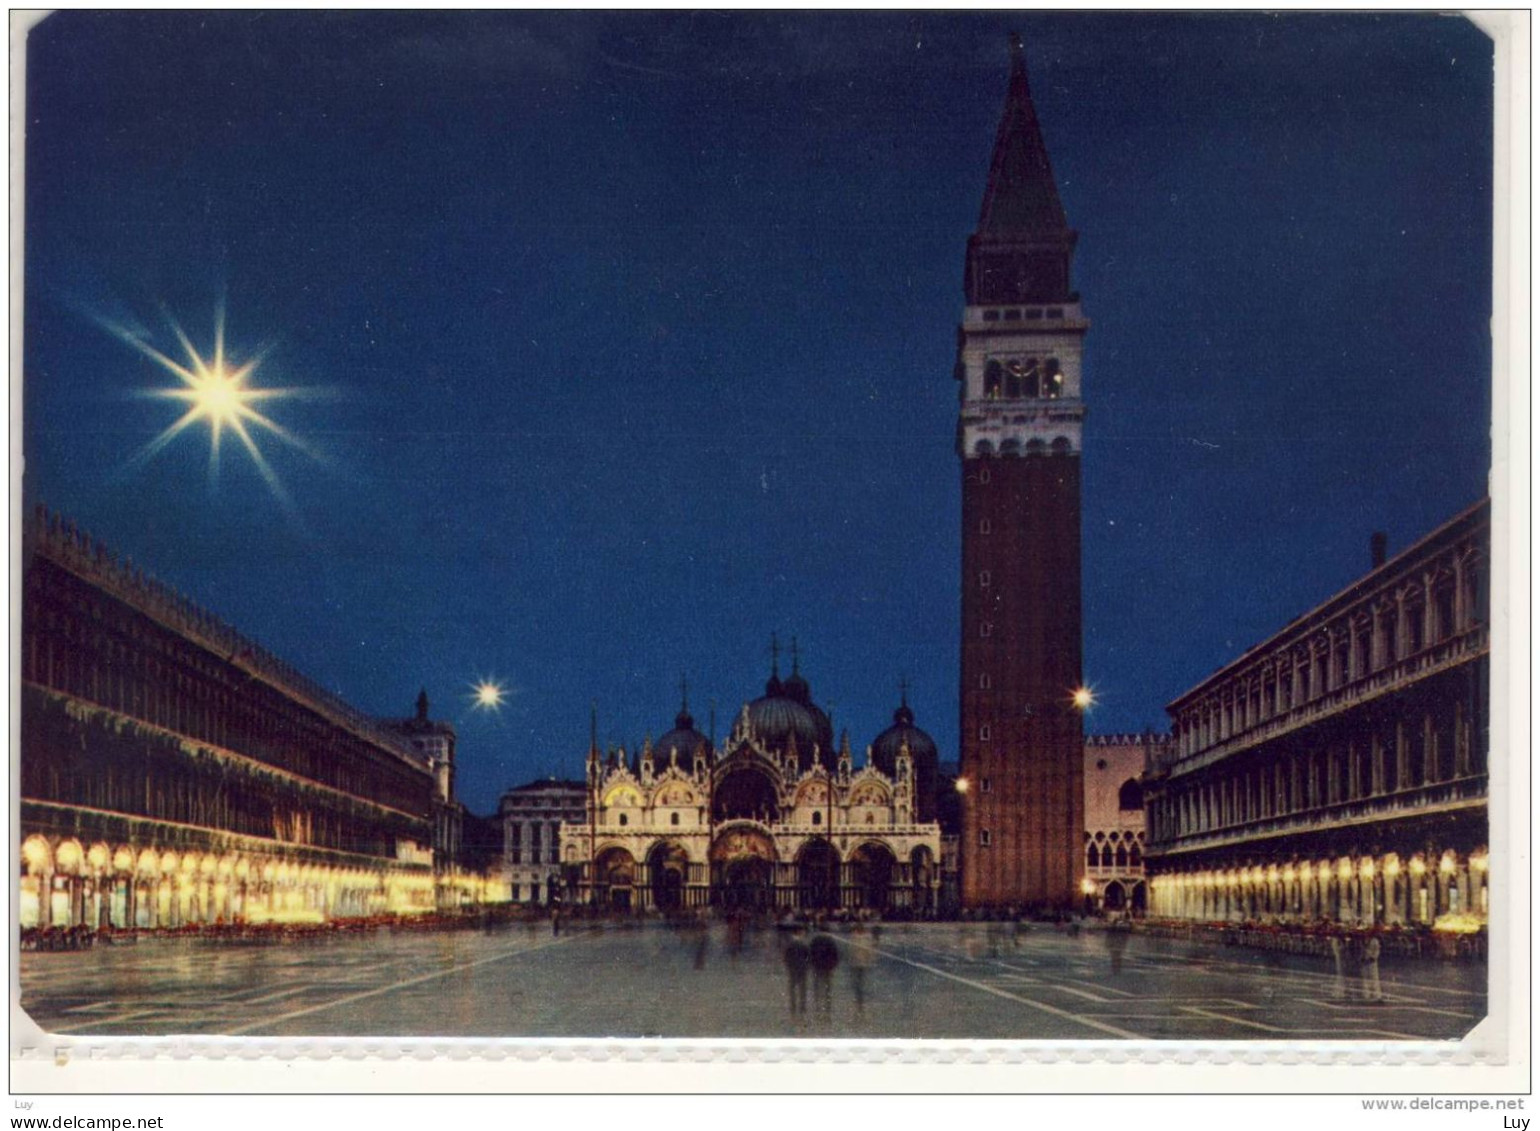 VENEZIA - Piazza S. Marco - Notturno, Mond, Moon, Luna, Lune,  Viaggiata - Venezia (Venice)